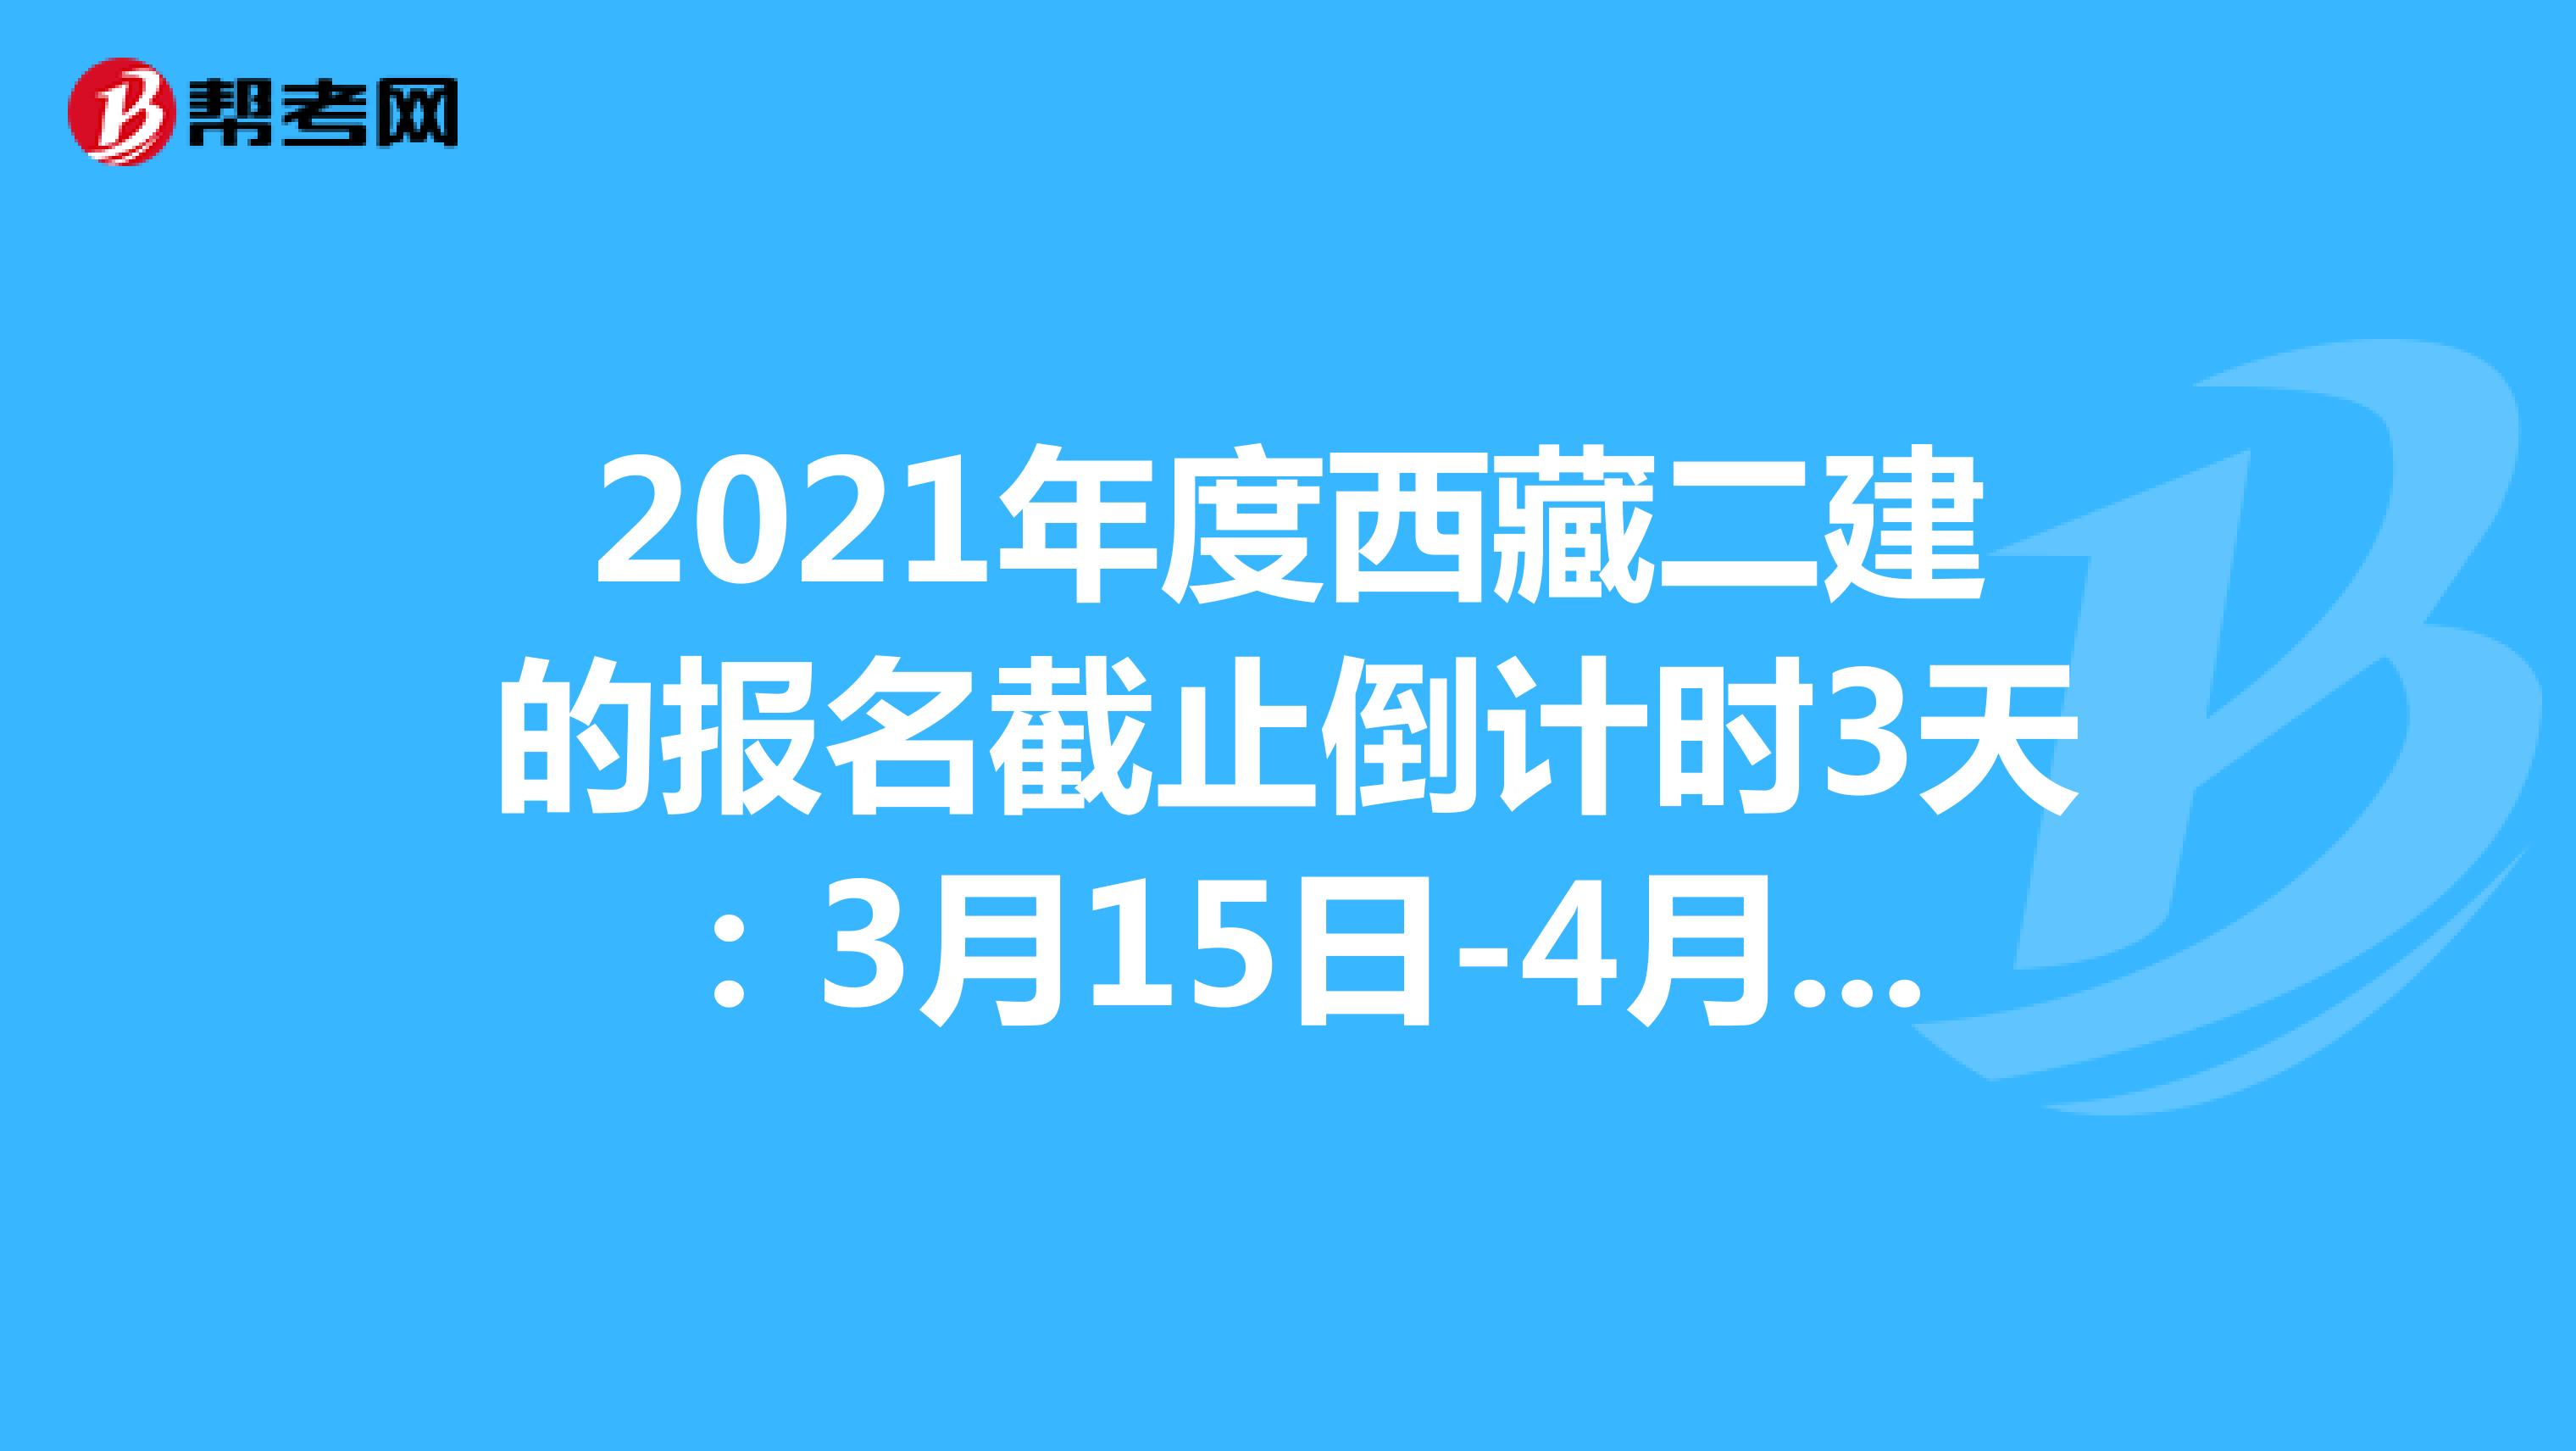 2021年度西藏二建的报名截止倒计时3天：3月15日-4月9日